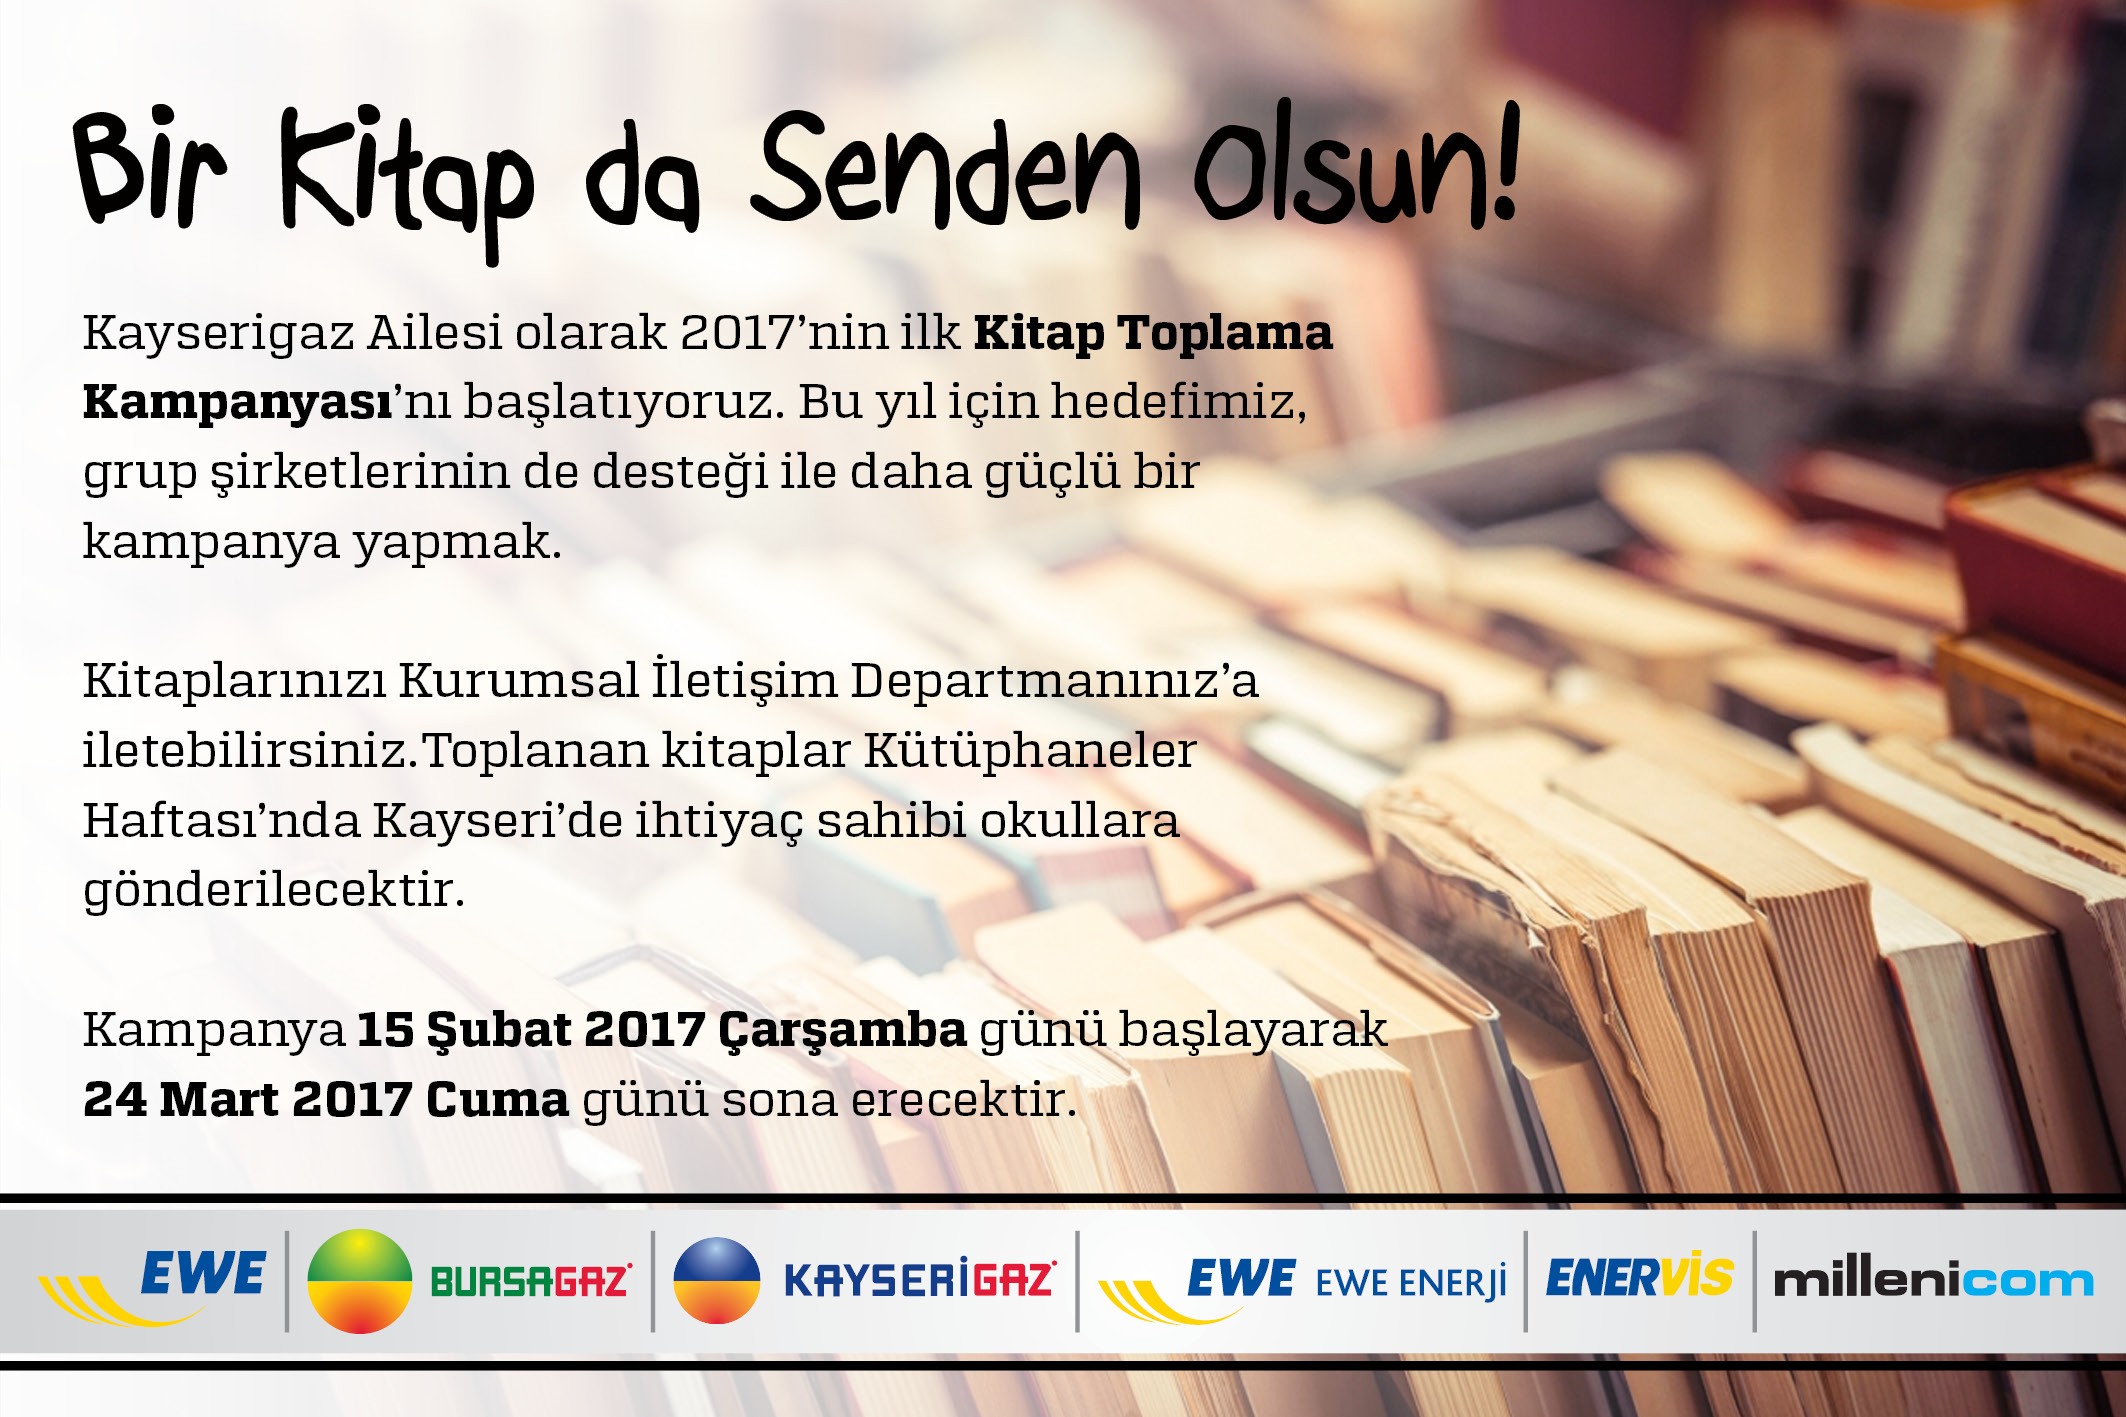 Kayserigaz Kayseri’de ihtiyaç sahibi okula hediye etmek üzere “Kitap Toplama Kampanyası” başlattı